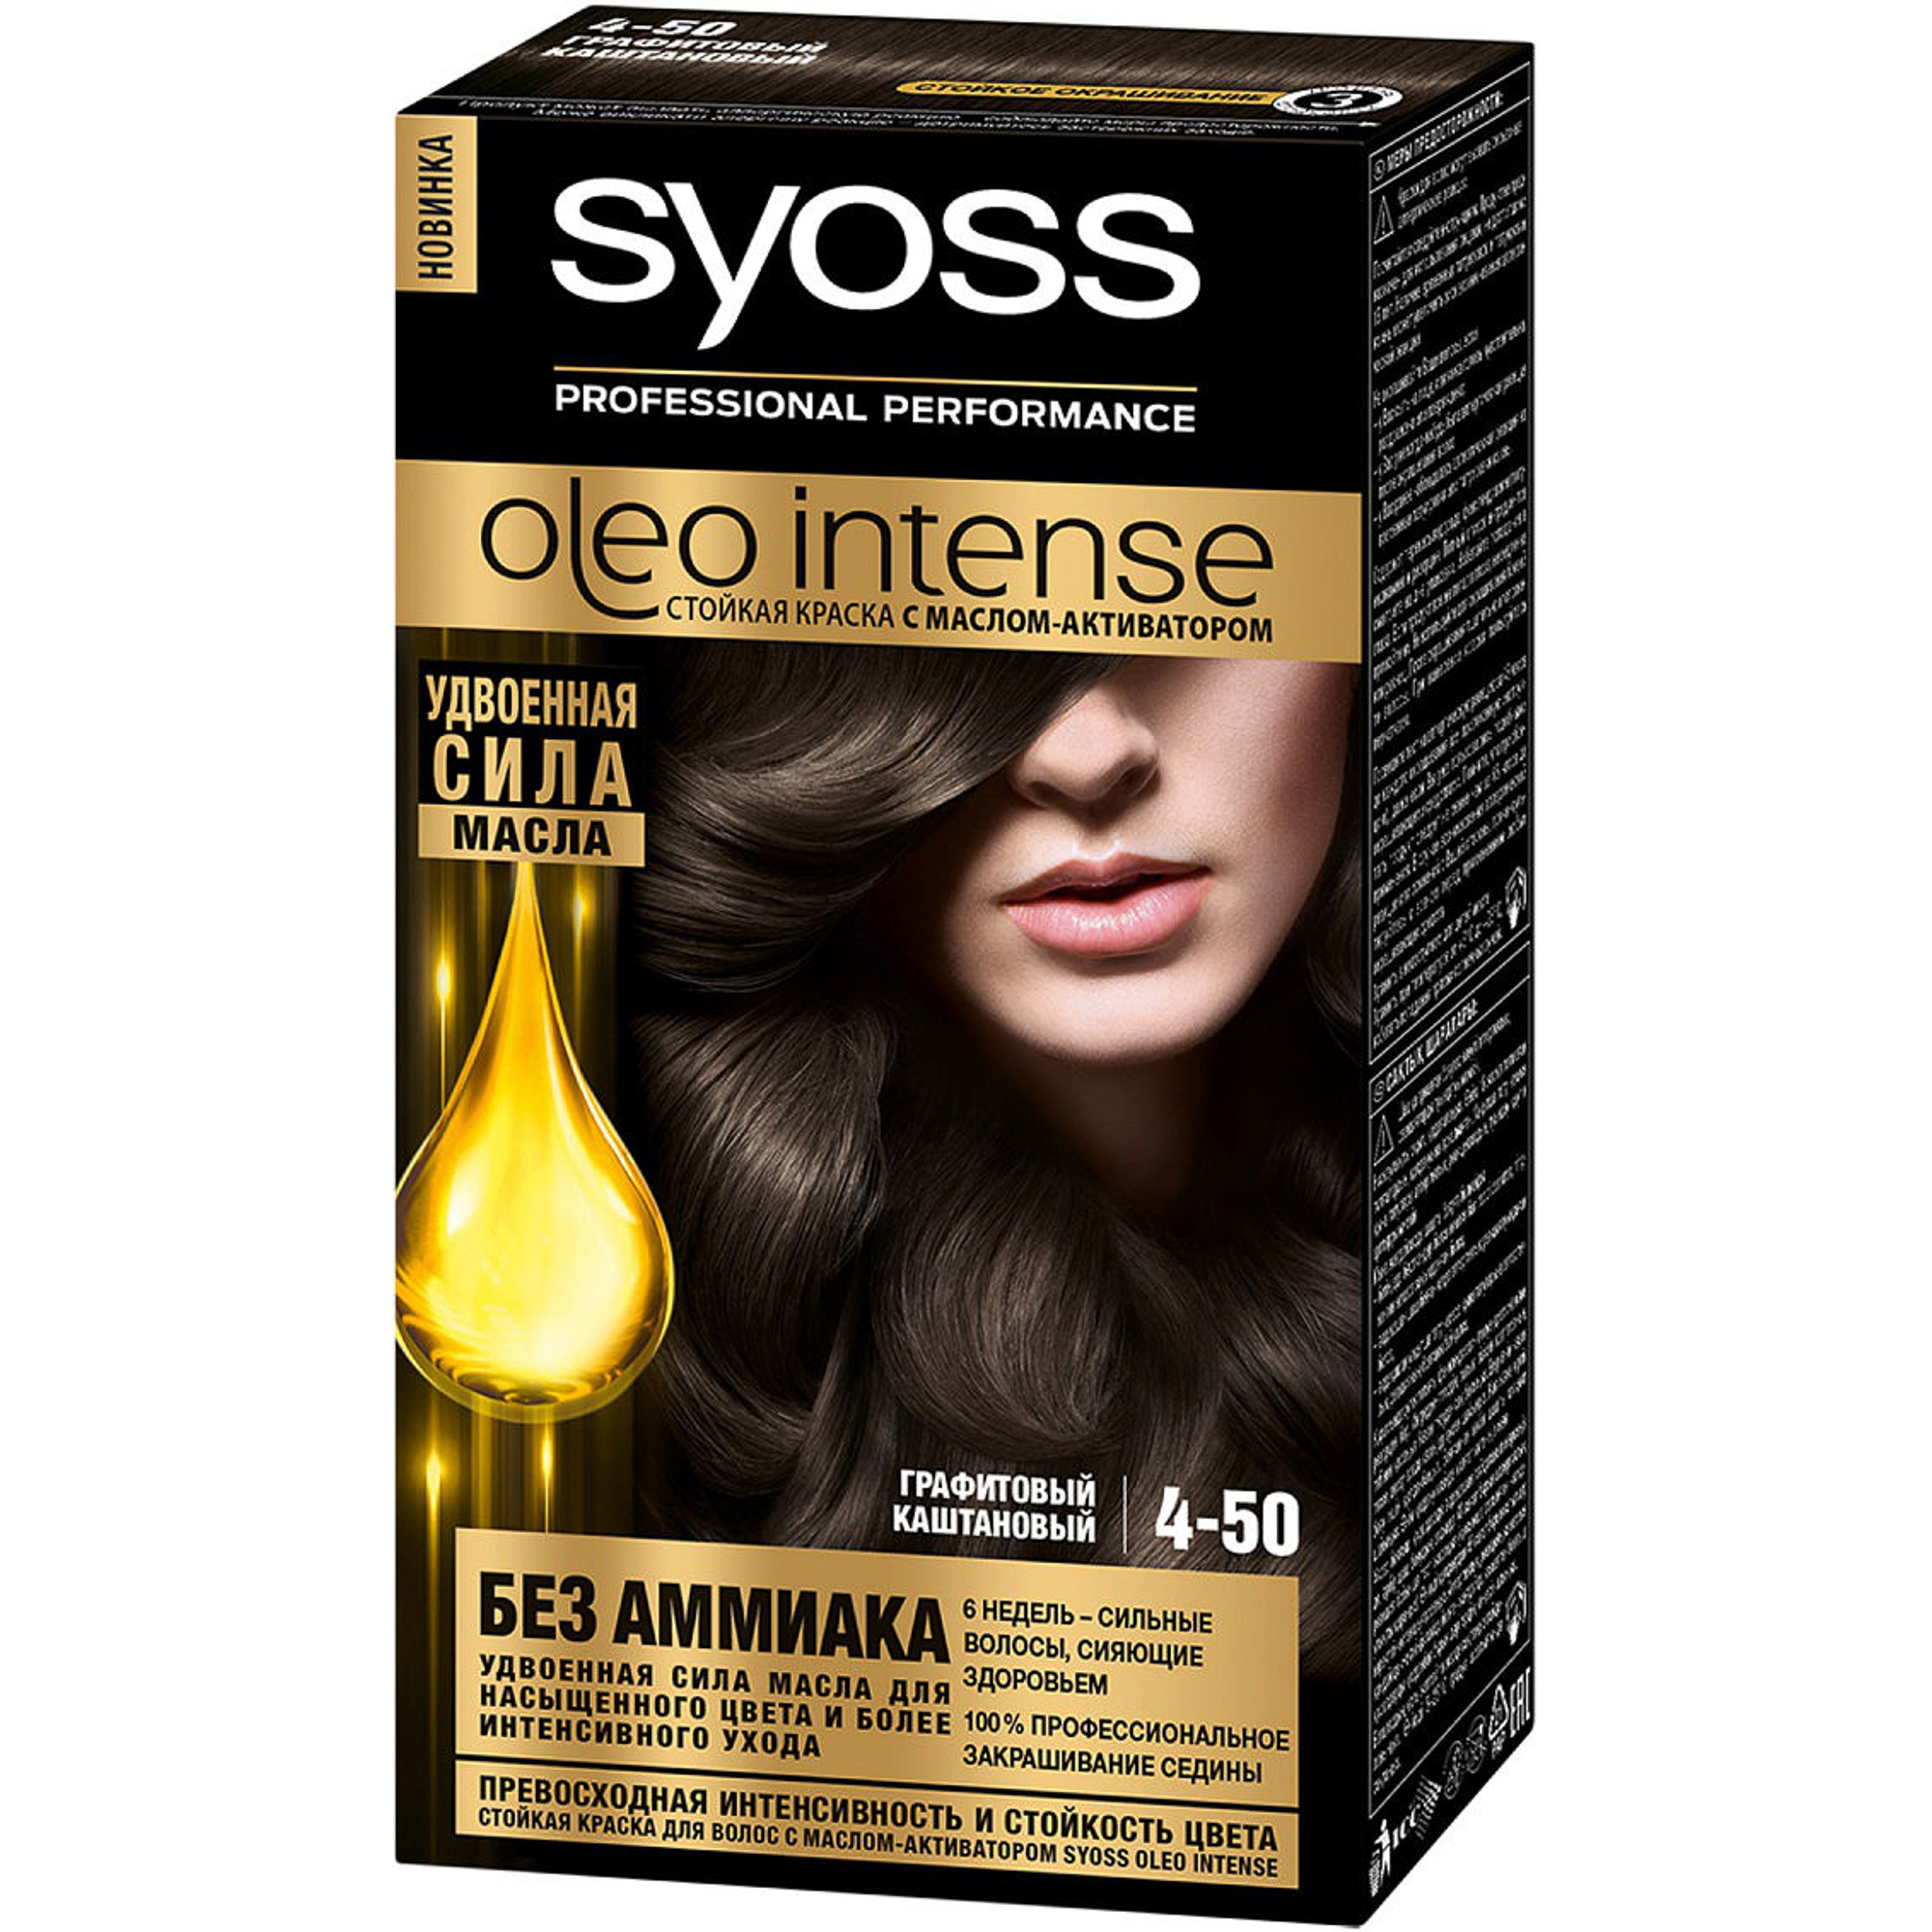 Краска для волос Syoss Oleo Intense 4-50 Графитовый каштановый краска для волос syoss oleo intense 4 15 ореховый каштановый 50 мл